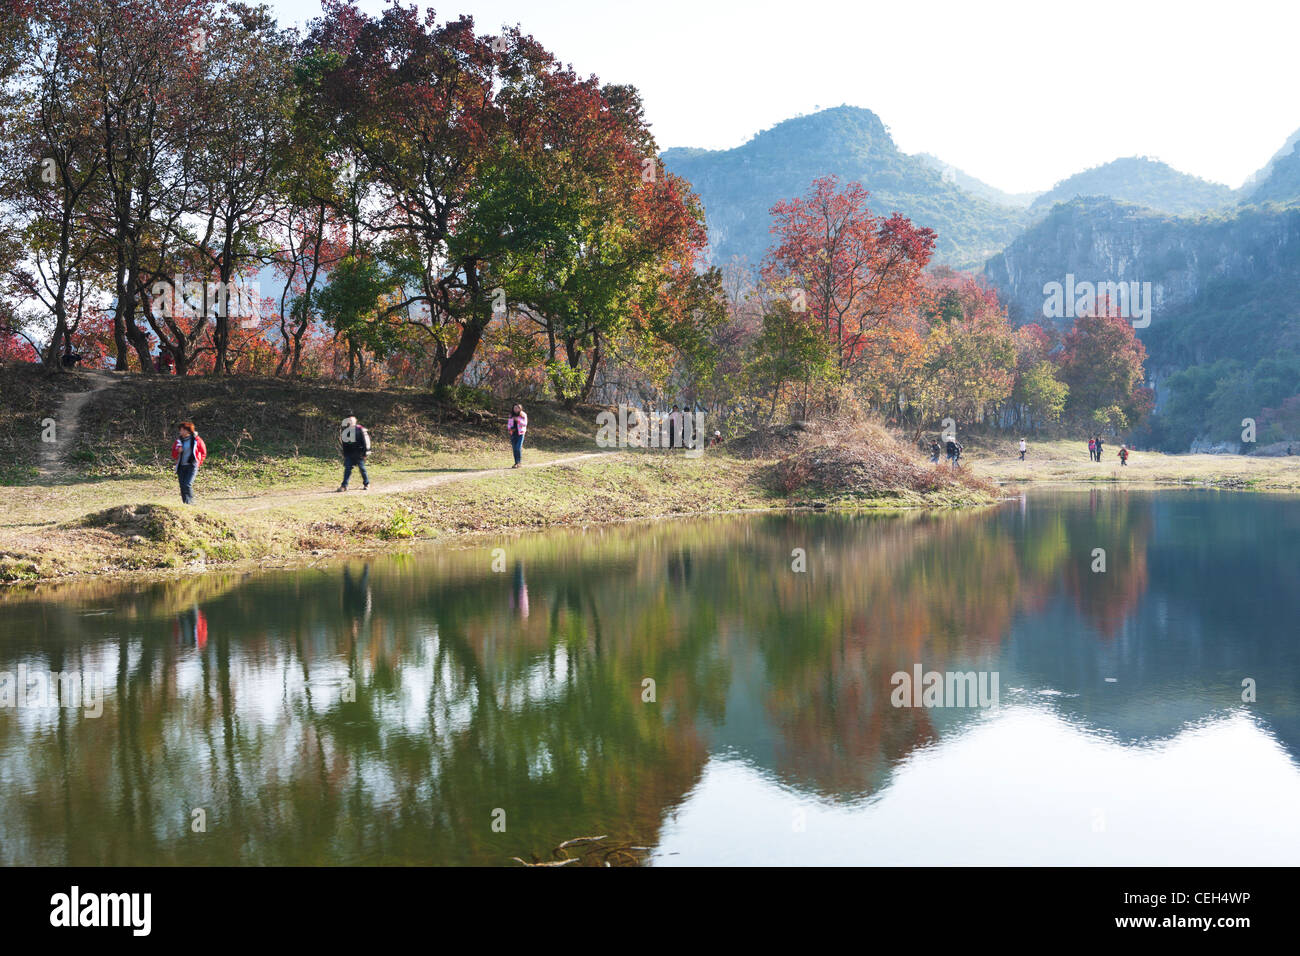 China Guilin Physische Geographie Guangxi Region Schönheit In der Natur Ahorn Blatt Reisen Landschaften Stockfoto